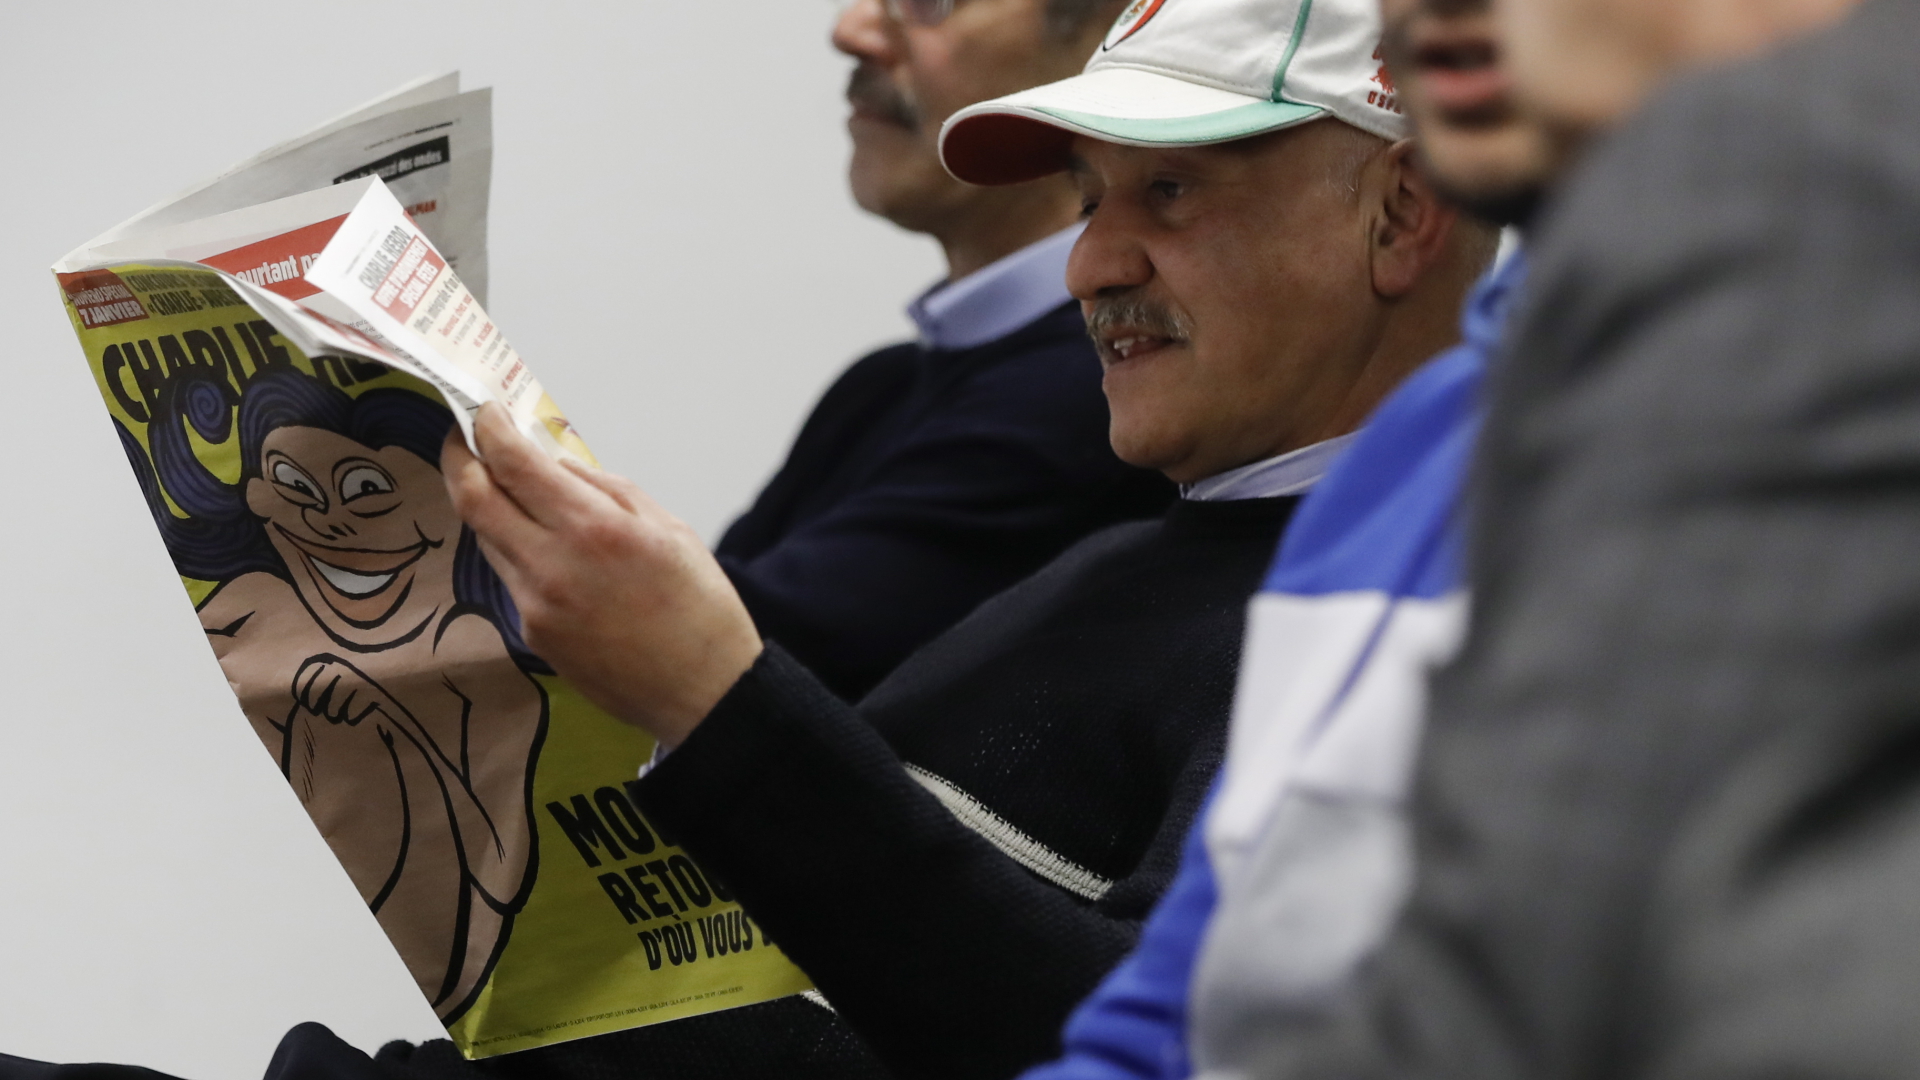 Ein Mitglied der iranischen Opposition liest die französische Zeitung "Charlie Hebdo" | EPA